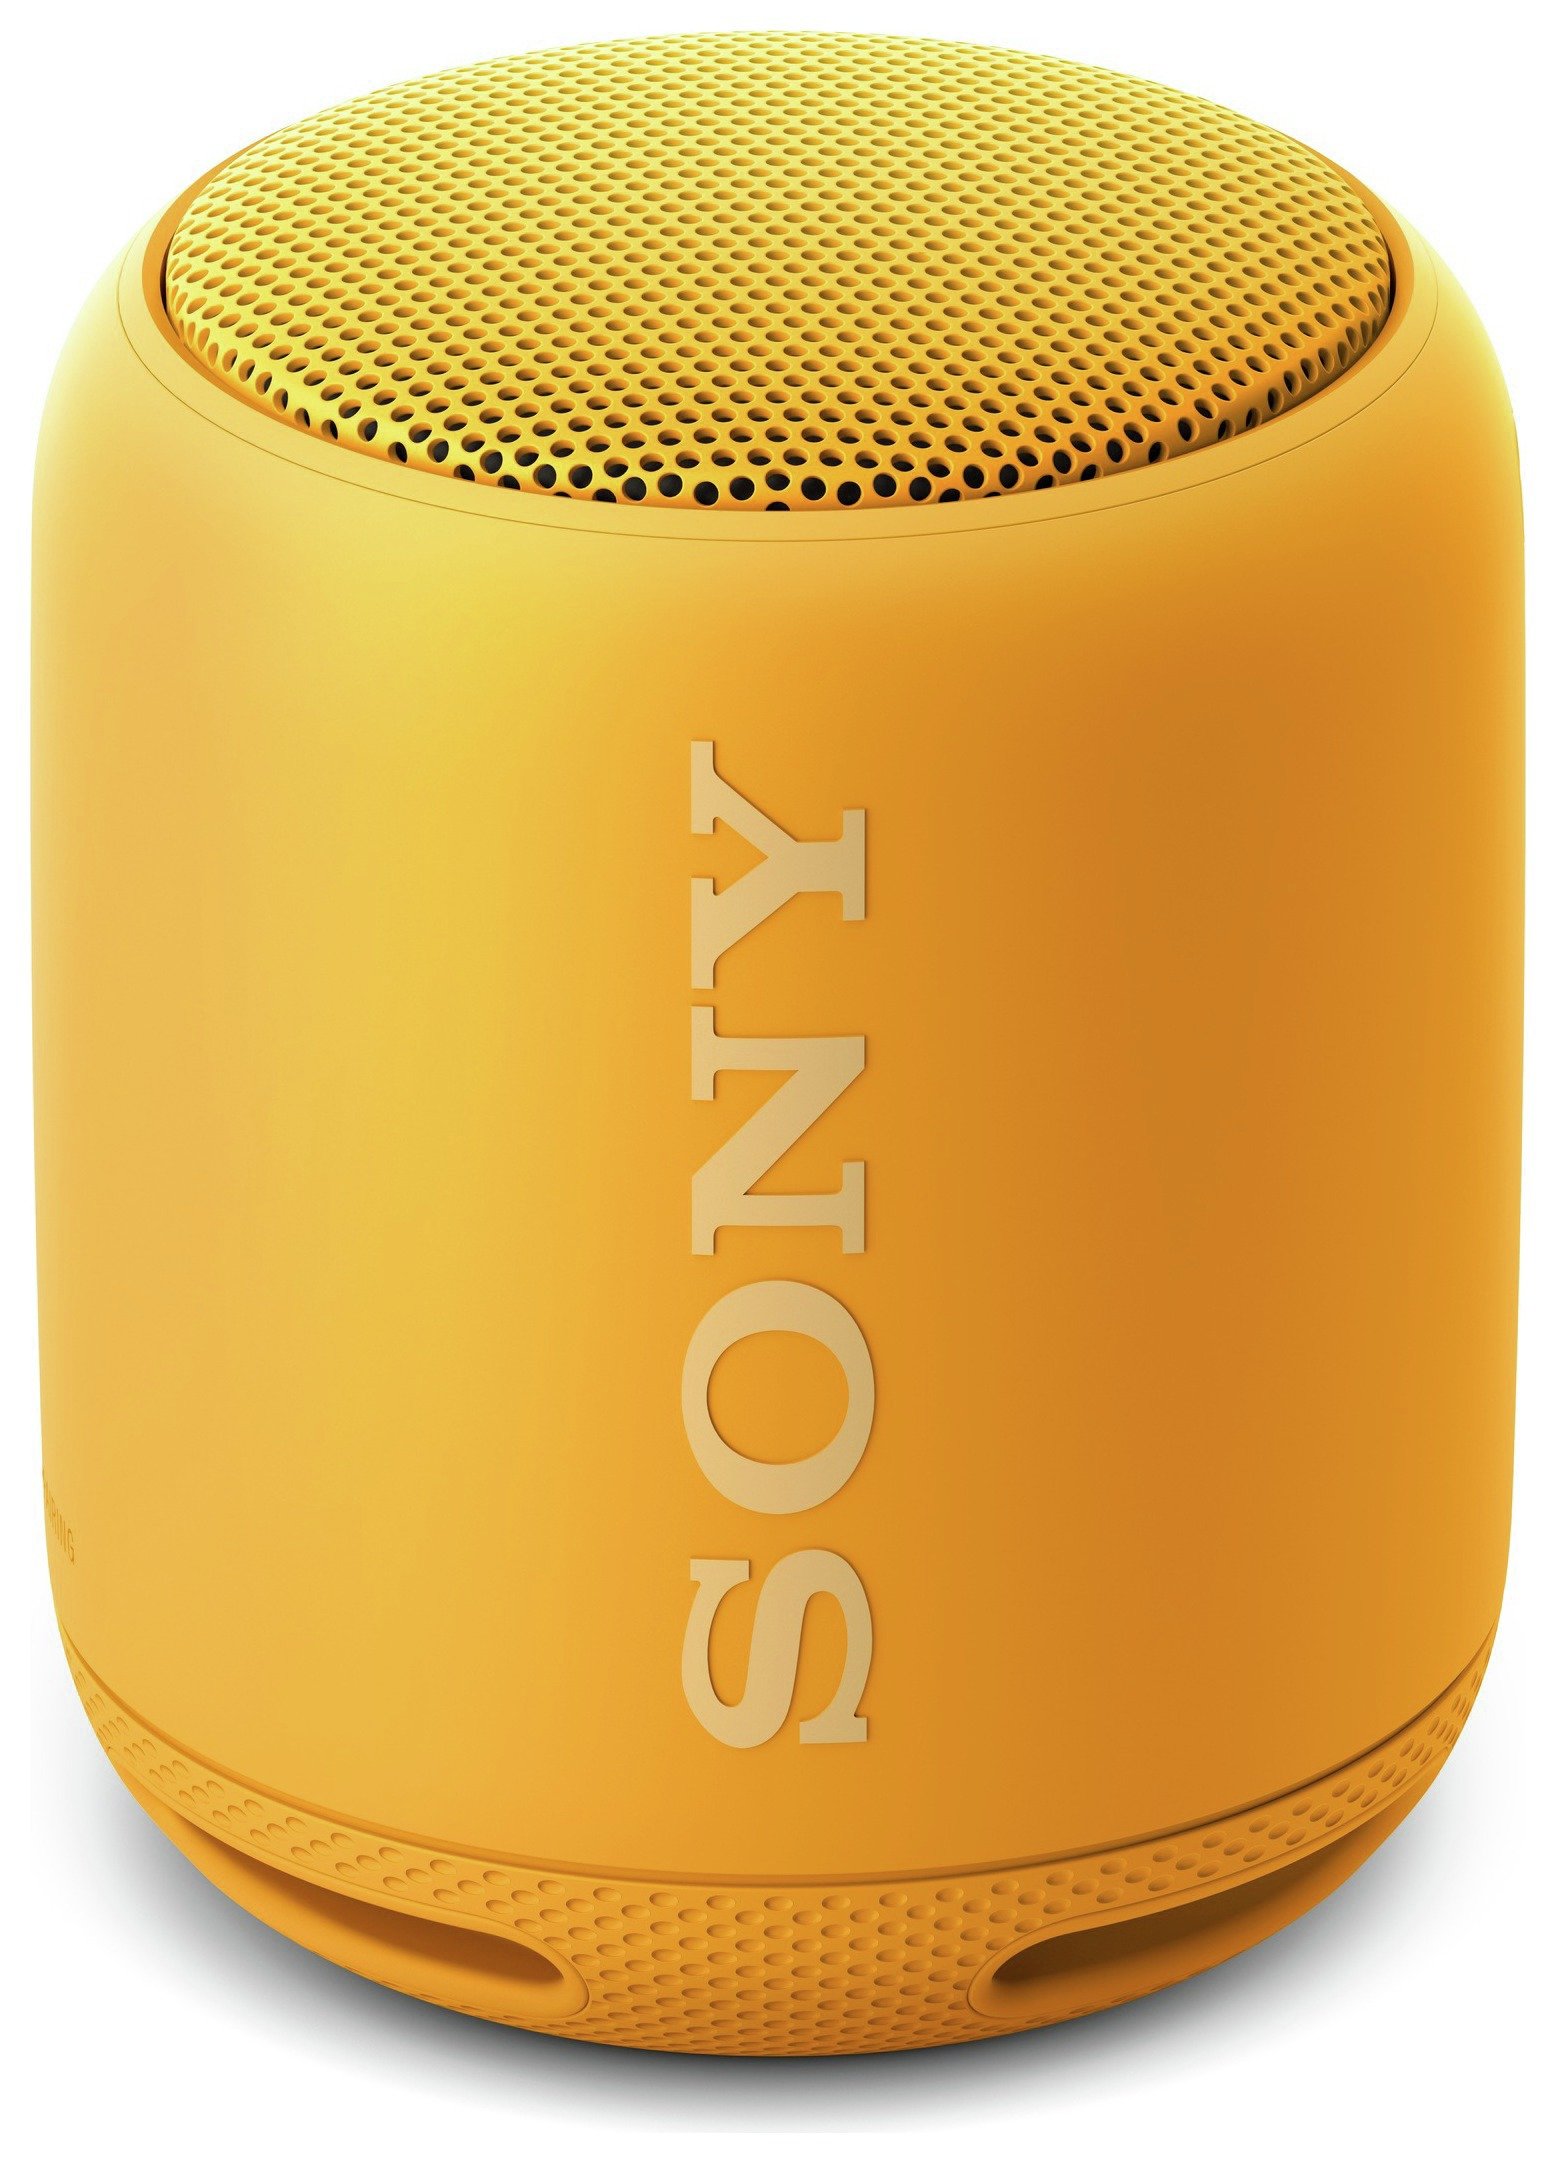 Sony SRSXB10Y Wireless Speaker - Yellow